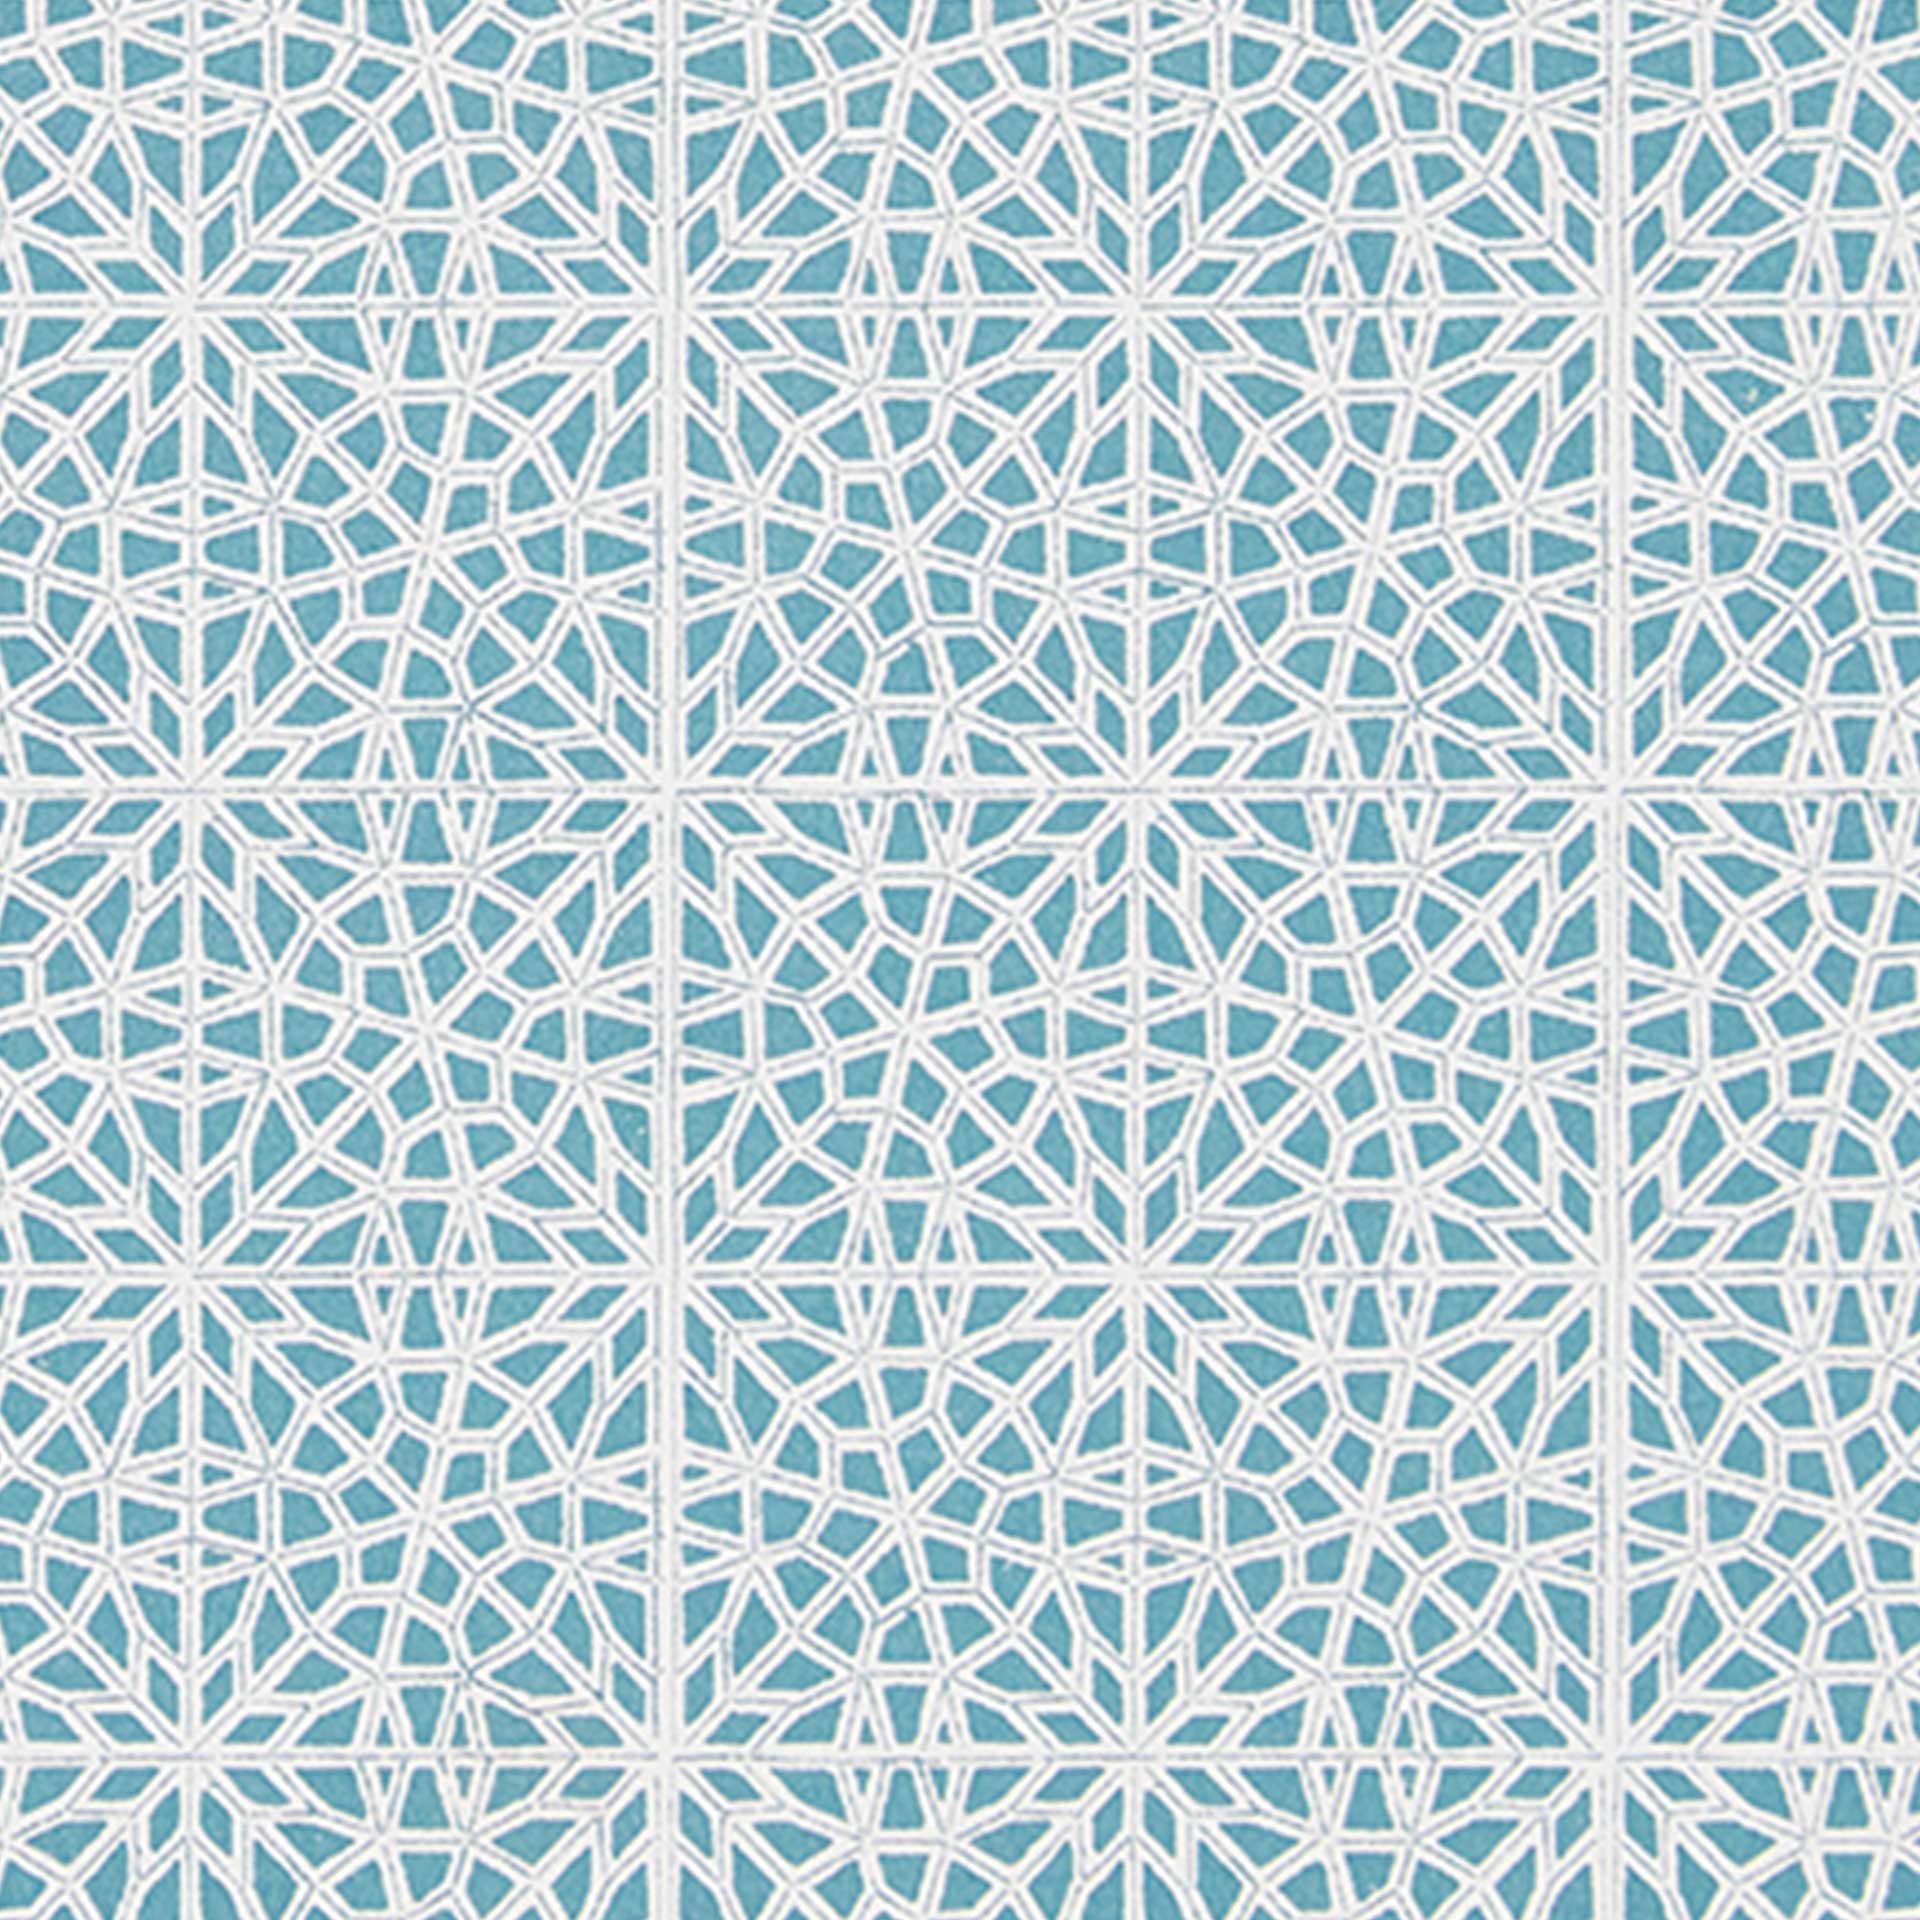 Closeup of a geometric pattern in light blue